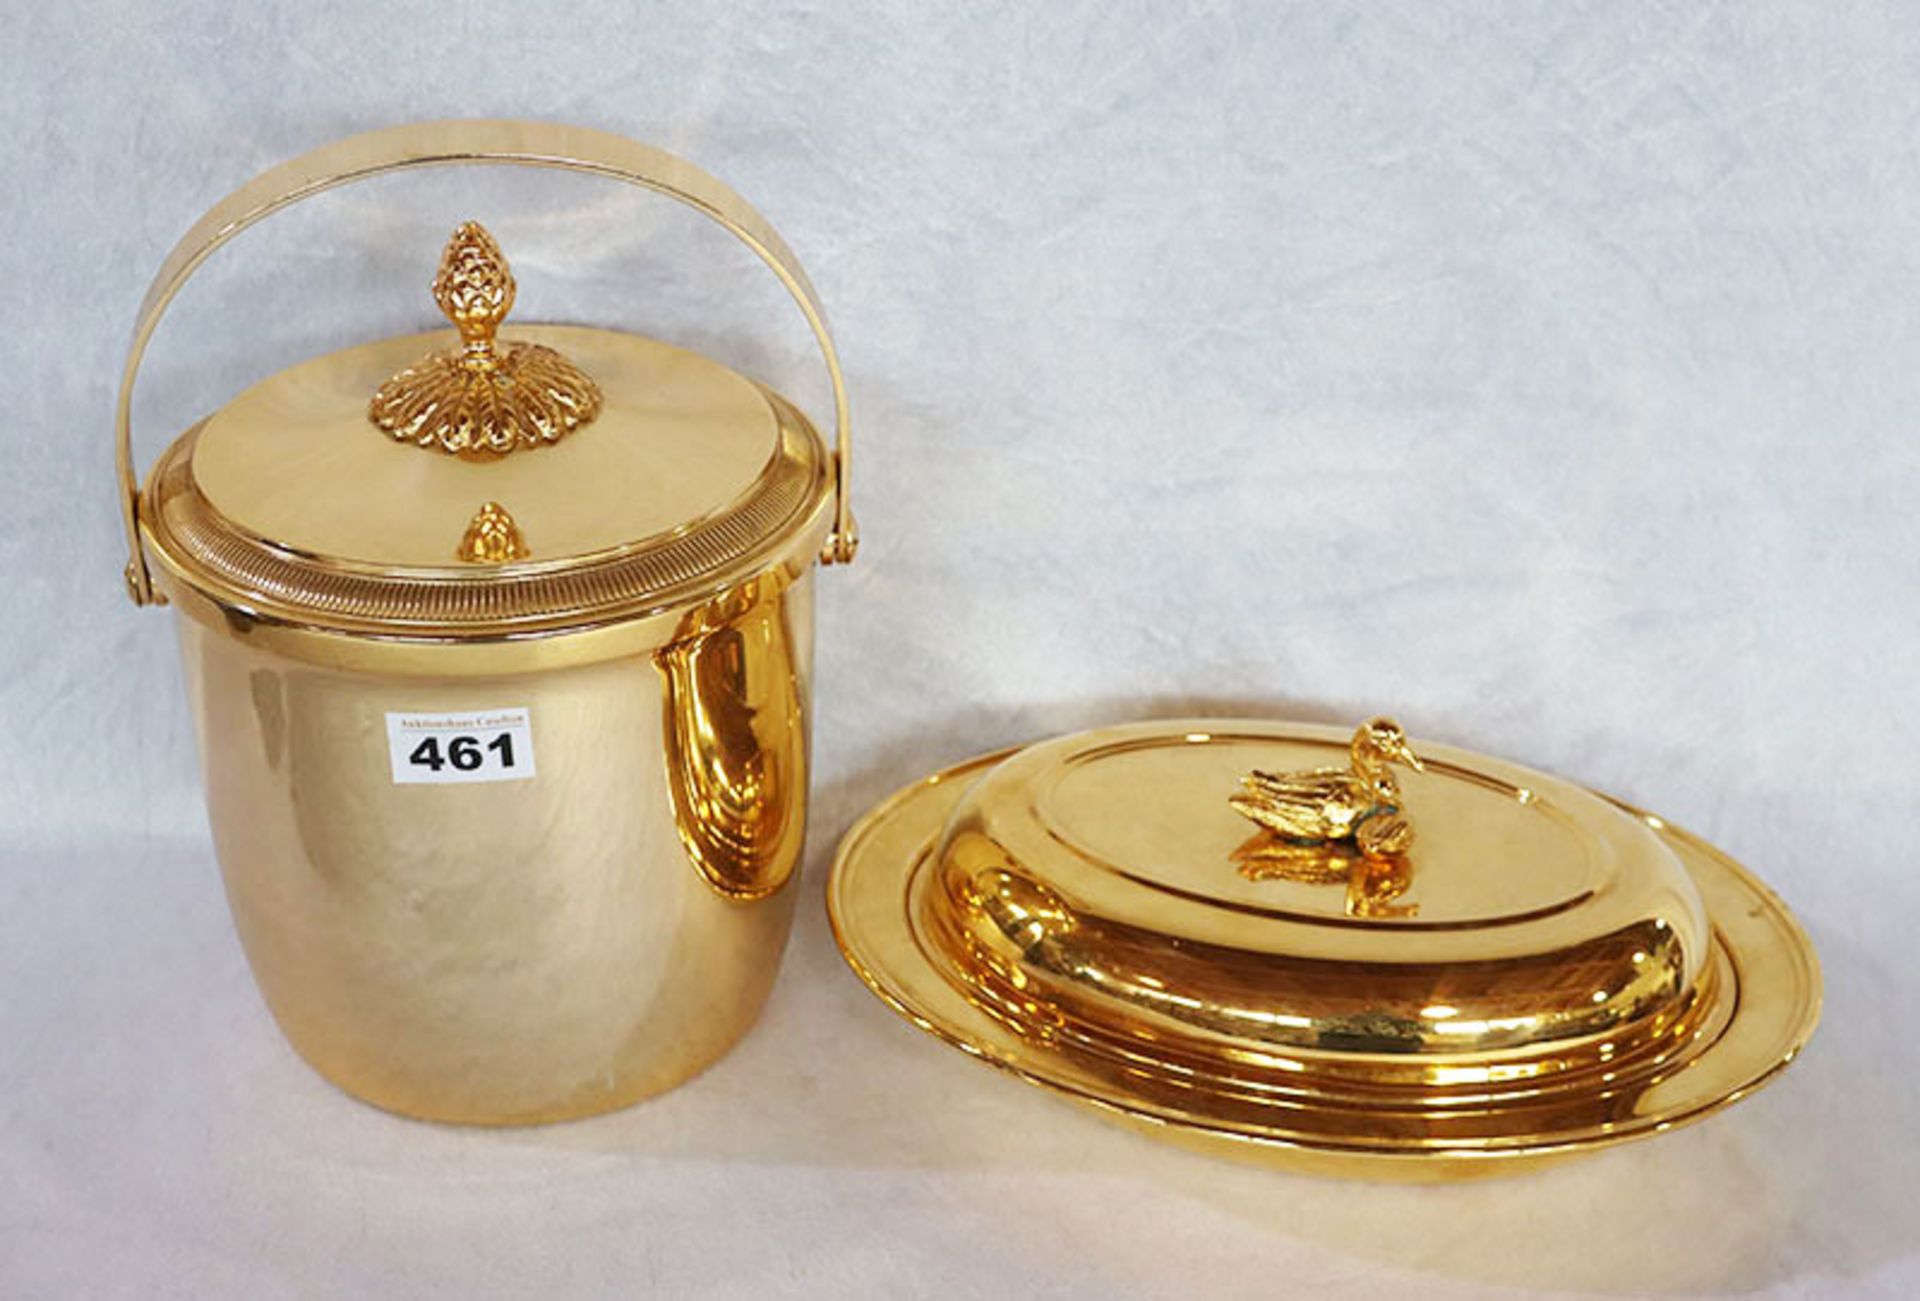 Eisbehälter, goldfarben, mit Eiszange, H 26 cm, D 19 cm, und goldfarbende Deckelschale mit